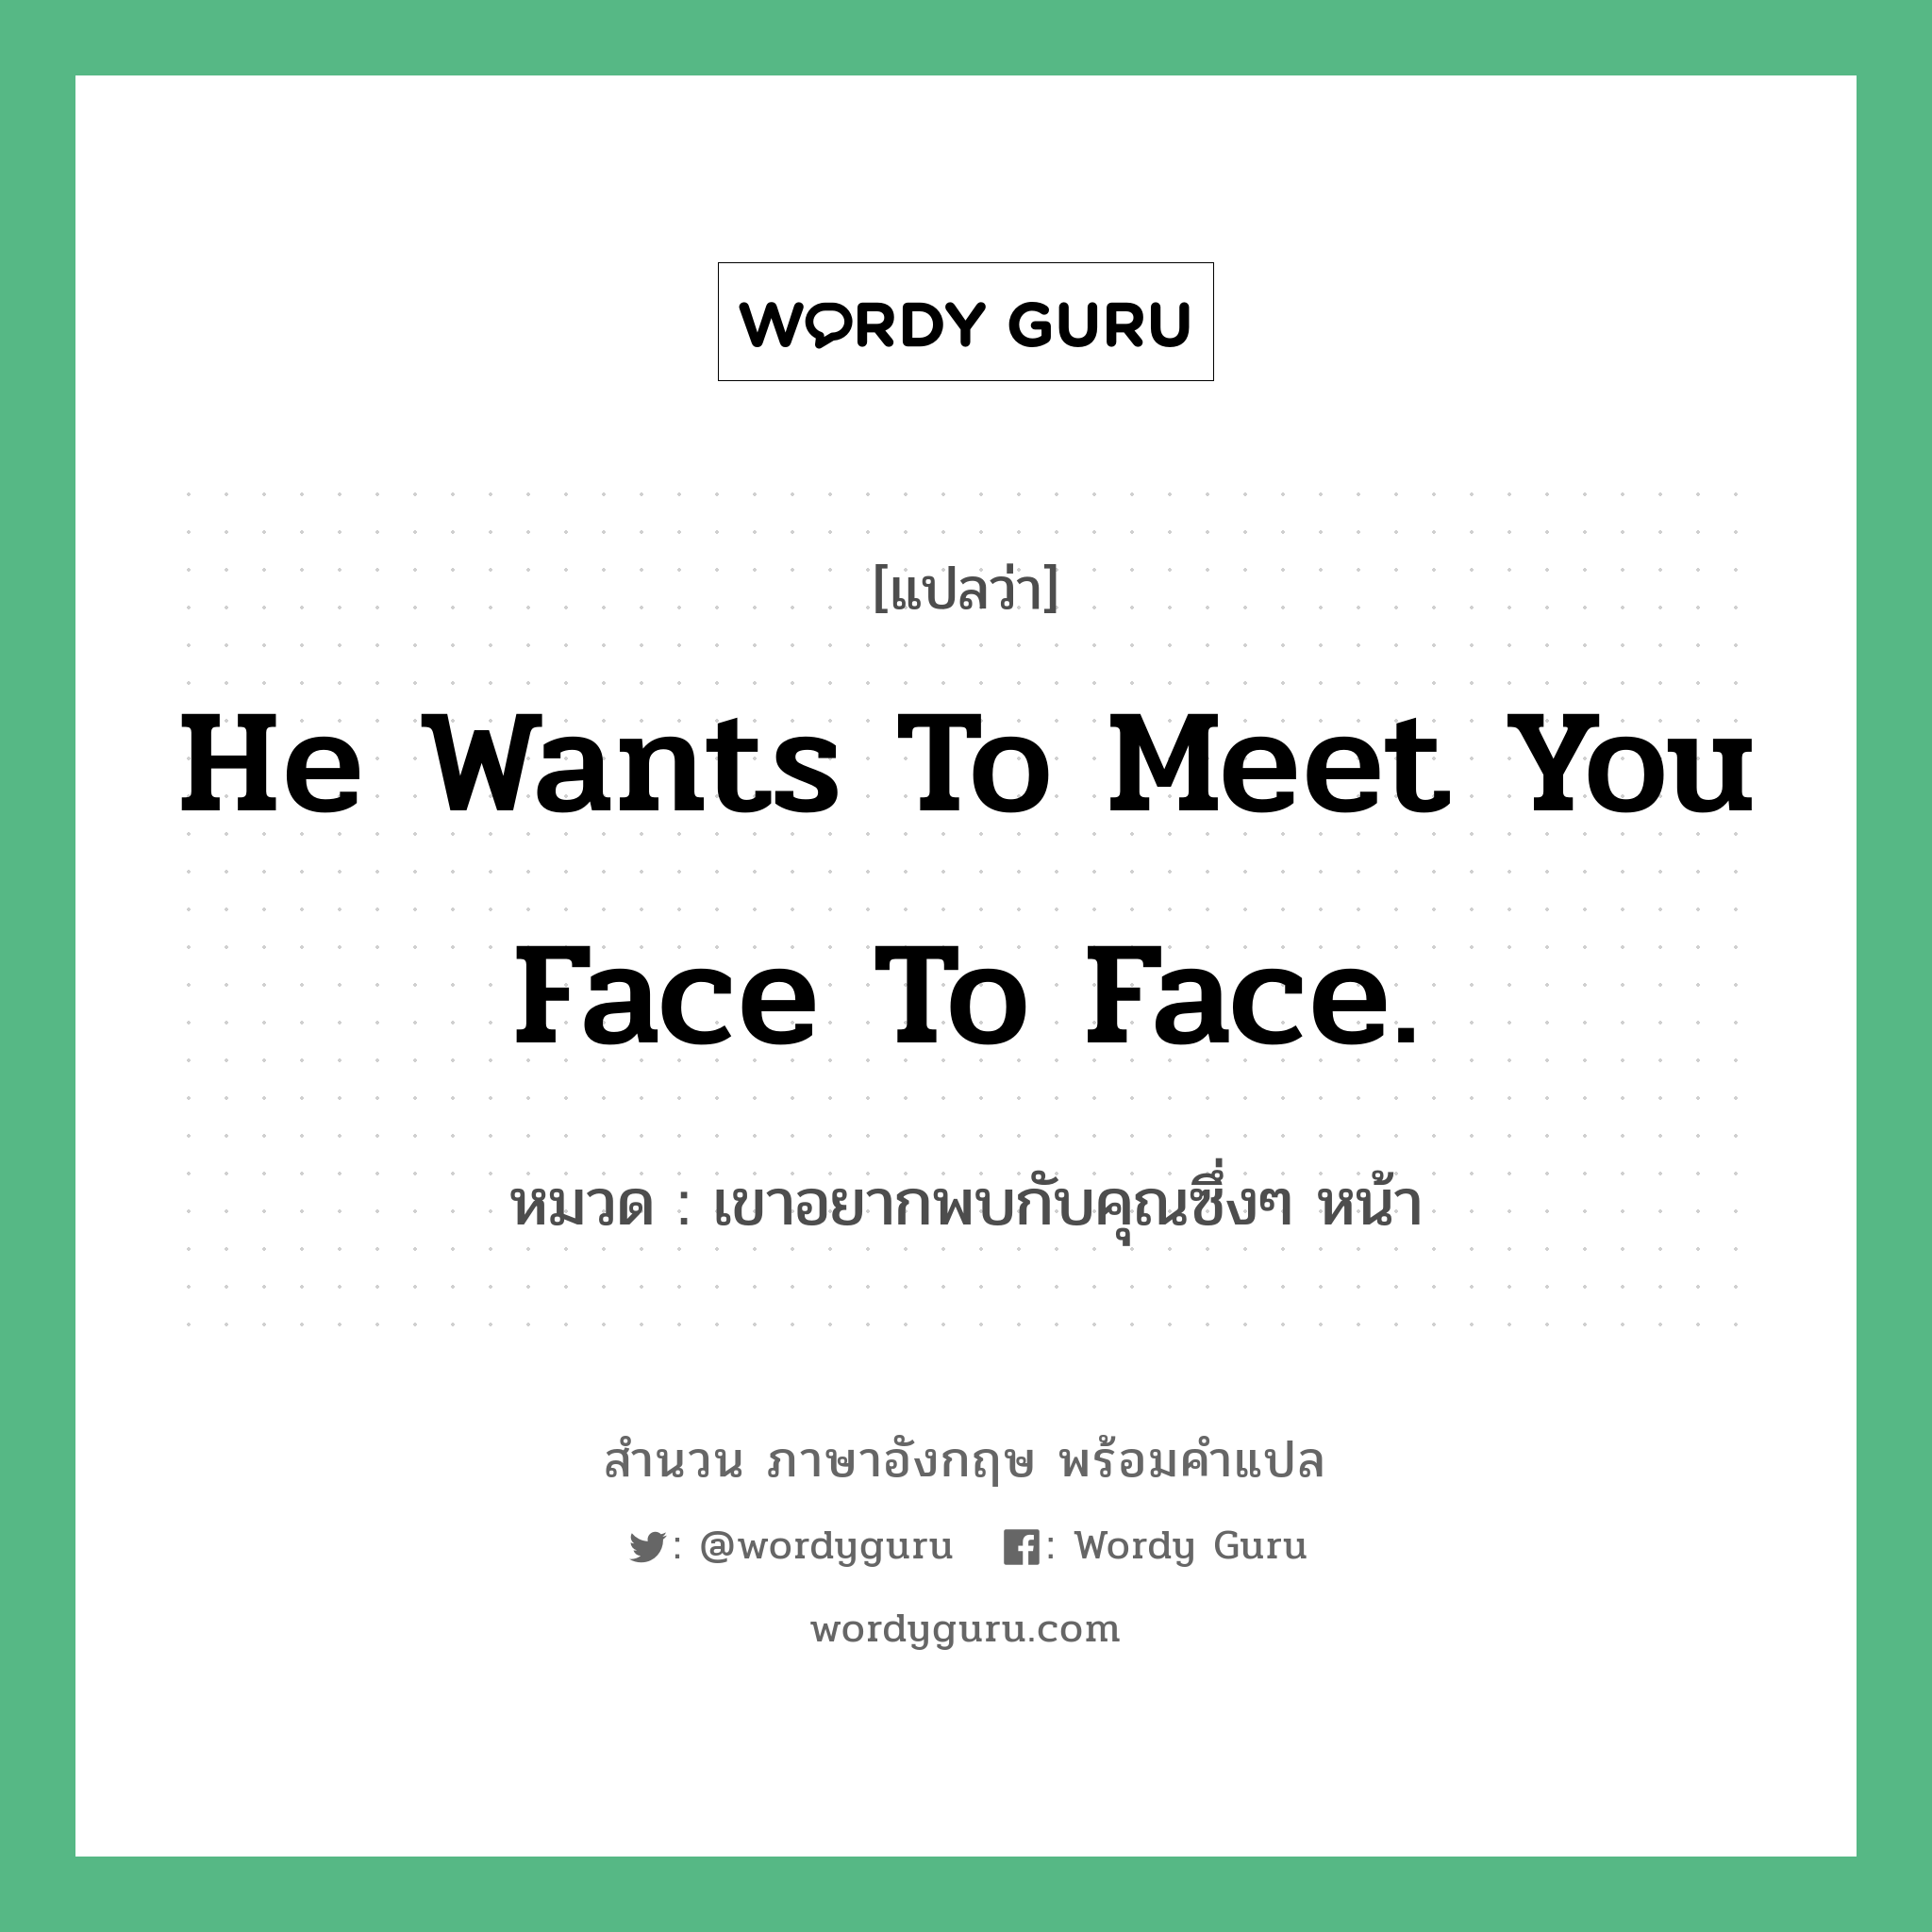 เขาอยากพบกับคุณซึ่งๆ หน้า ภาษาอังกฤษ?, สำนวนภาษาอังกฤษ เขาอยากพบกับคุณซึ่งๆ หน้า แปลว่า เขาอยากพบกับคุณซึ่งๆ หน้า หมวด He wants to meet you face to face.